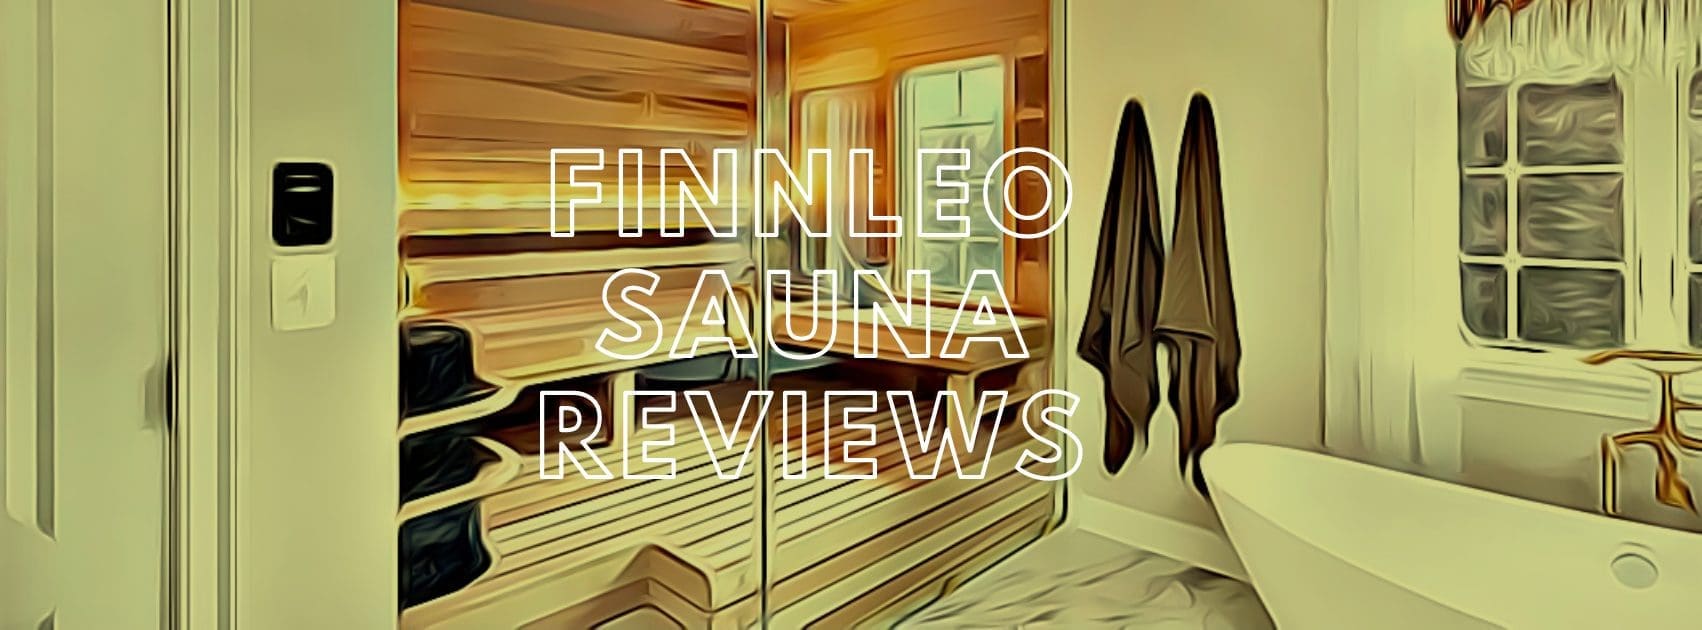 FINNLEO SAUNA reviews